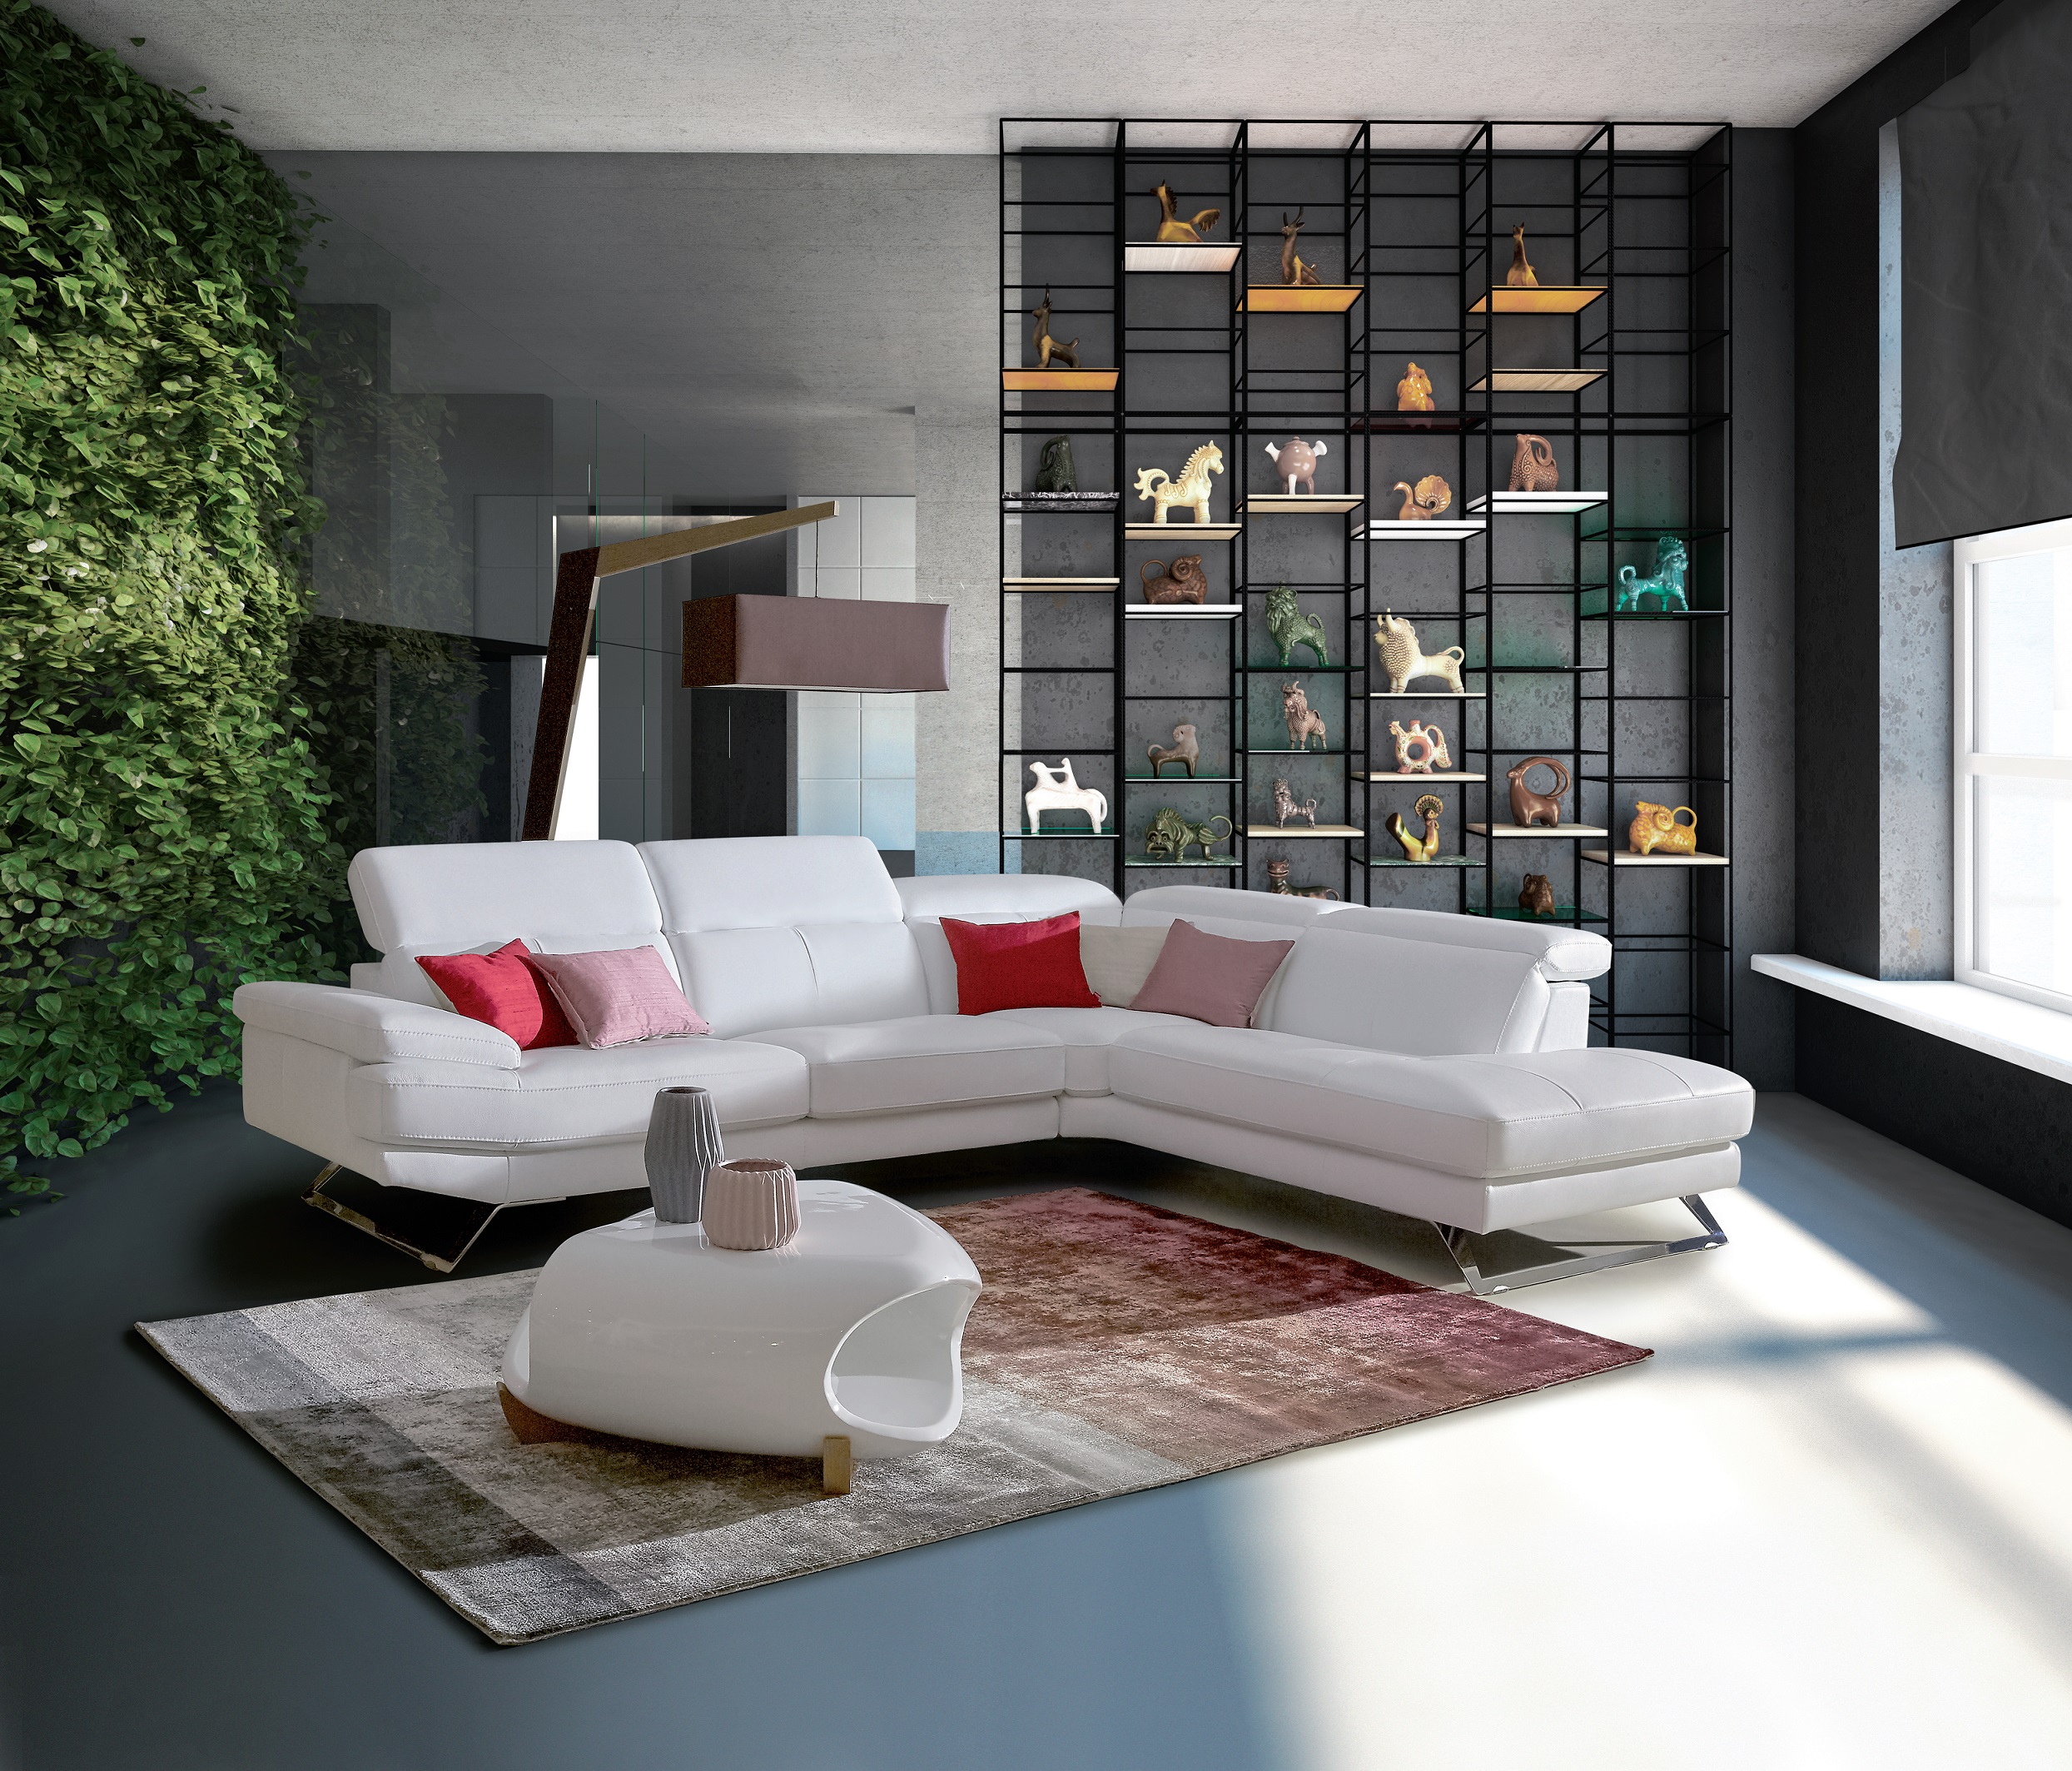 Home Salons: диван бизнес-класса ODISSEA с раскладной кроватью – 7990 шек. вместо 17,890 шек.